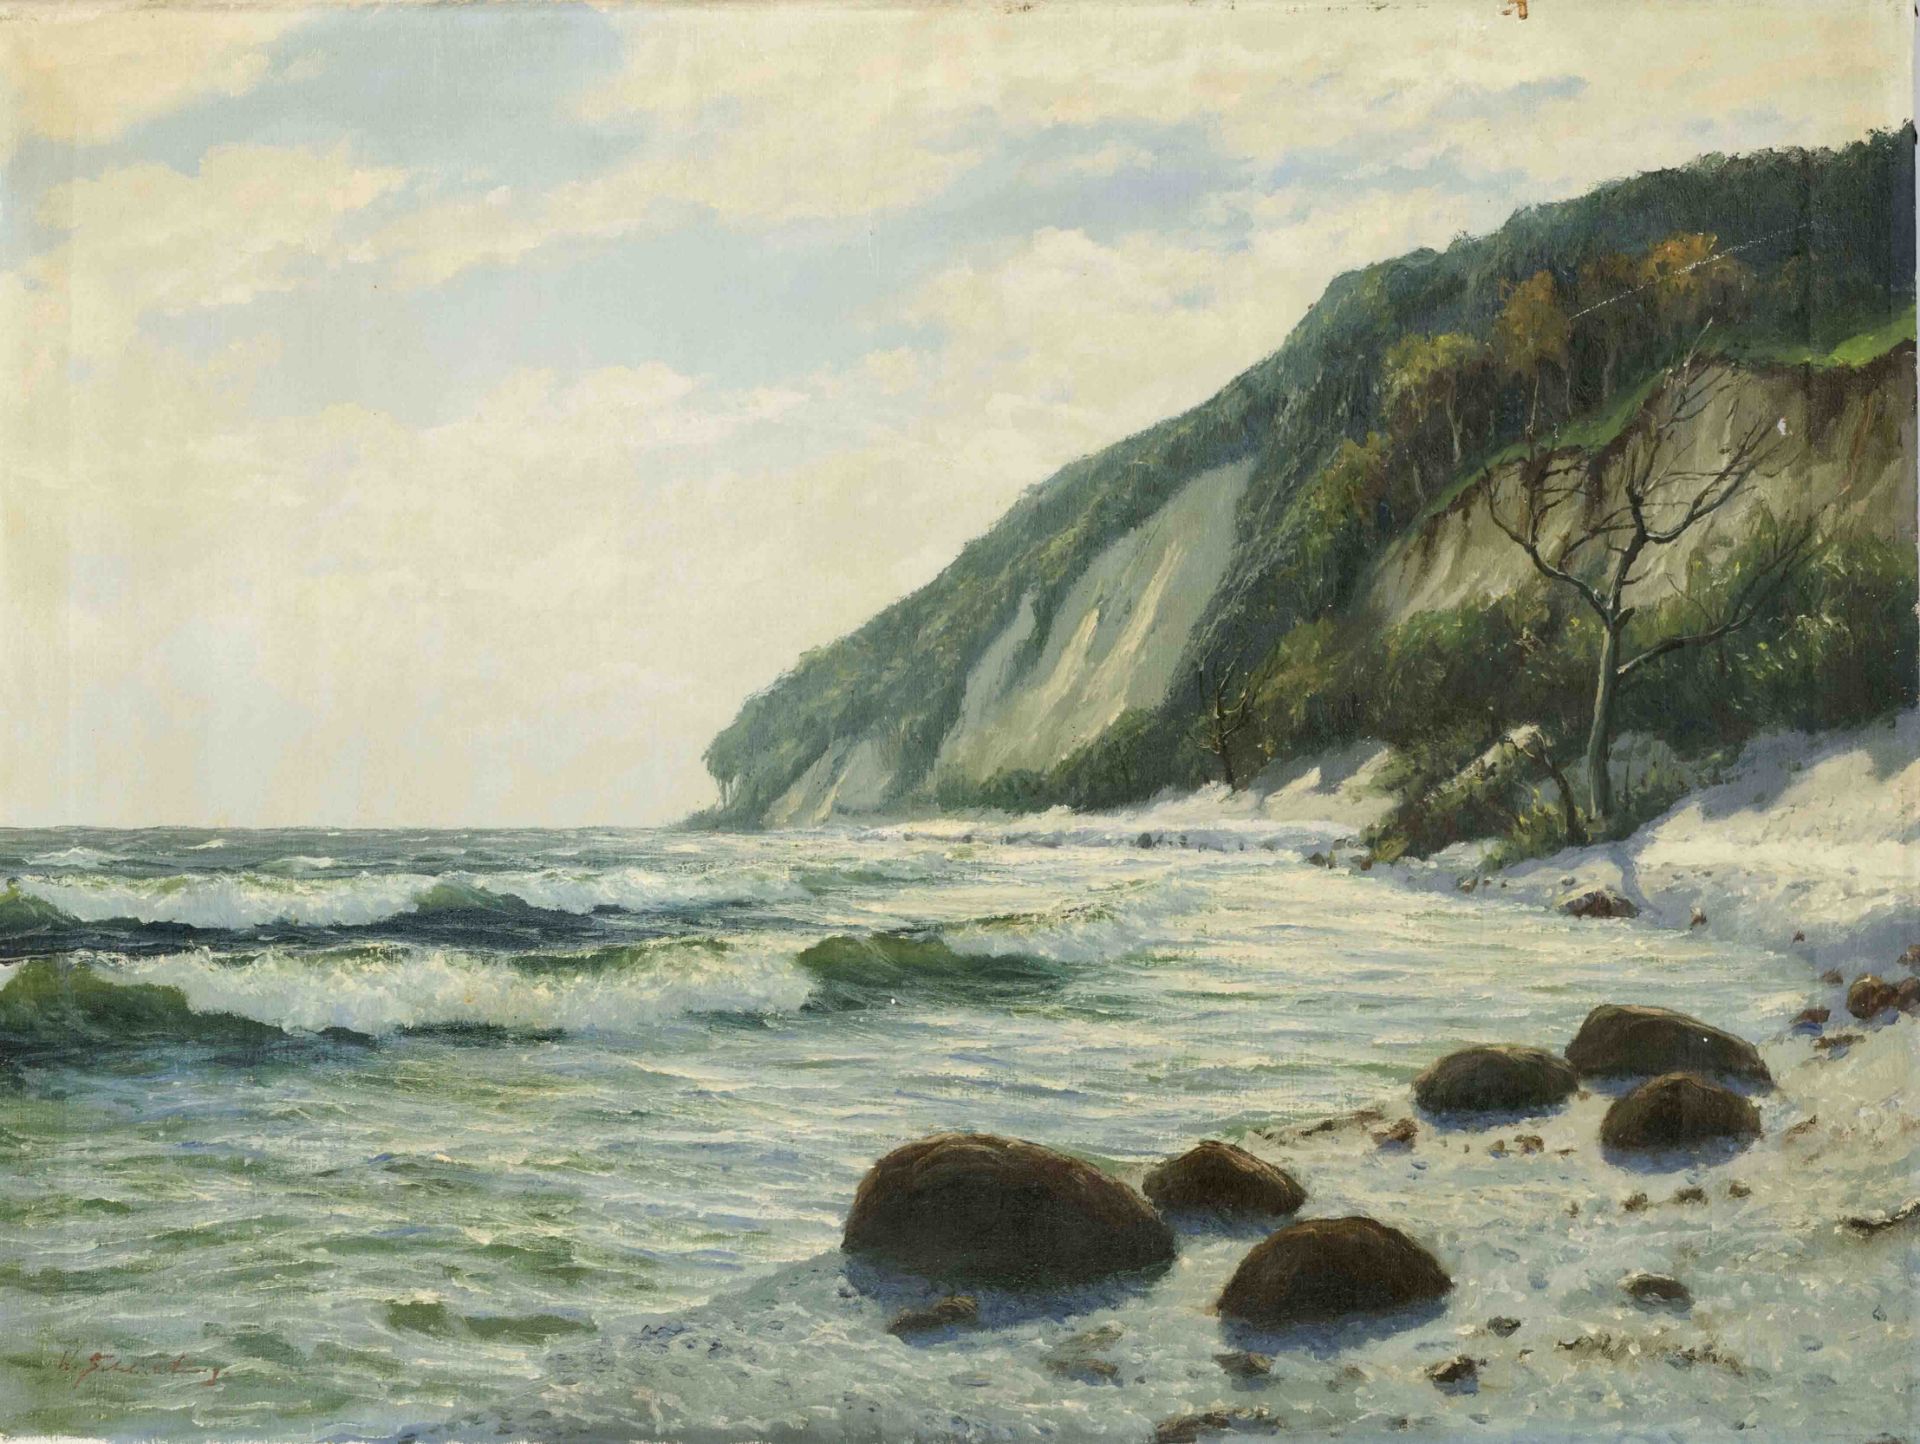 Waldemar Schlichting (1896-1970), German marine painter from Berlin. Steilküste auf Rügen, oil on